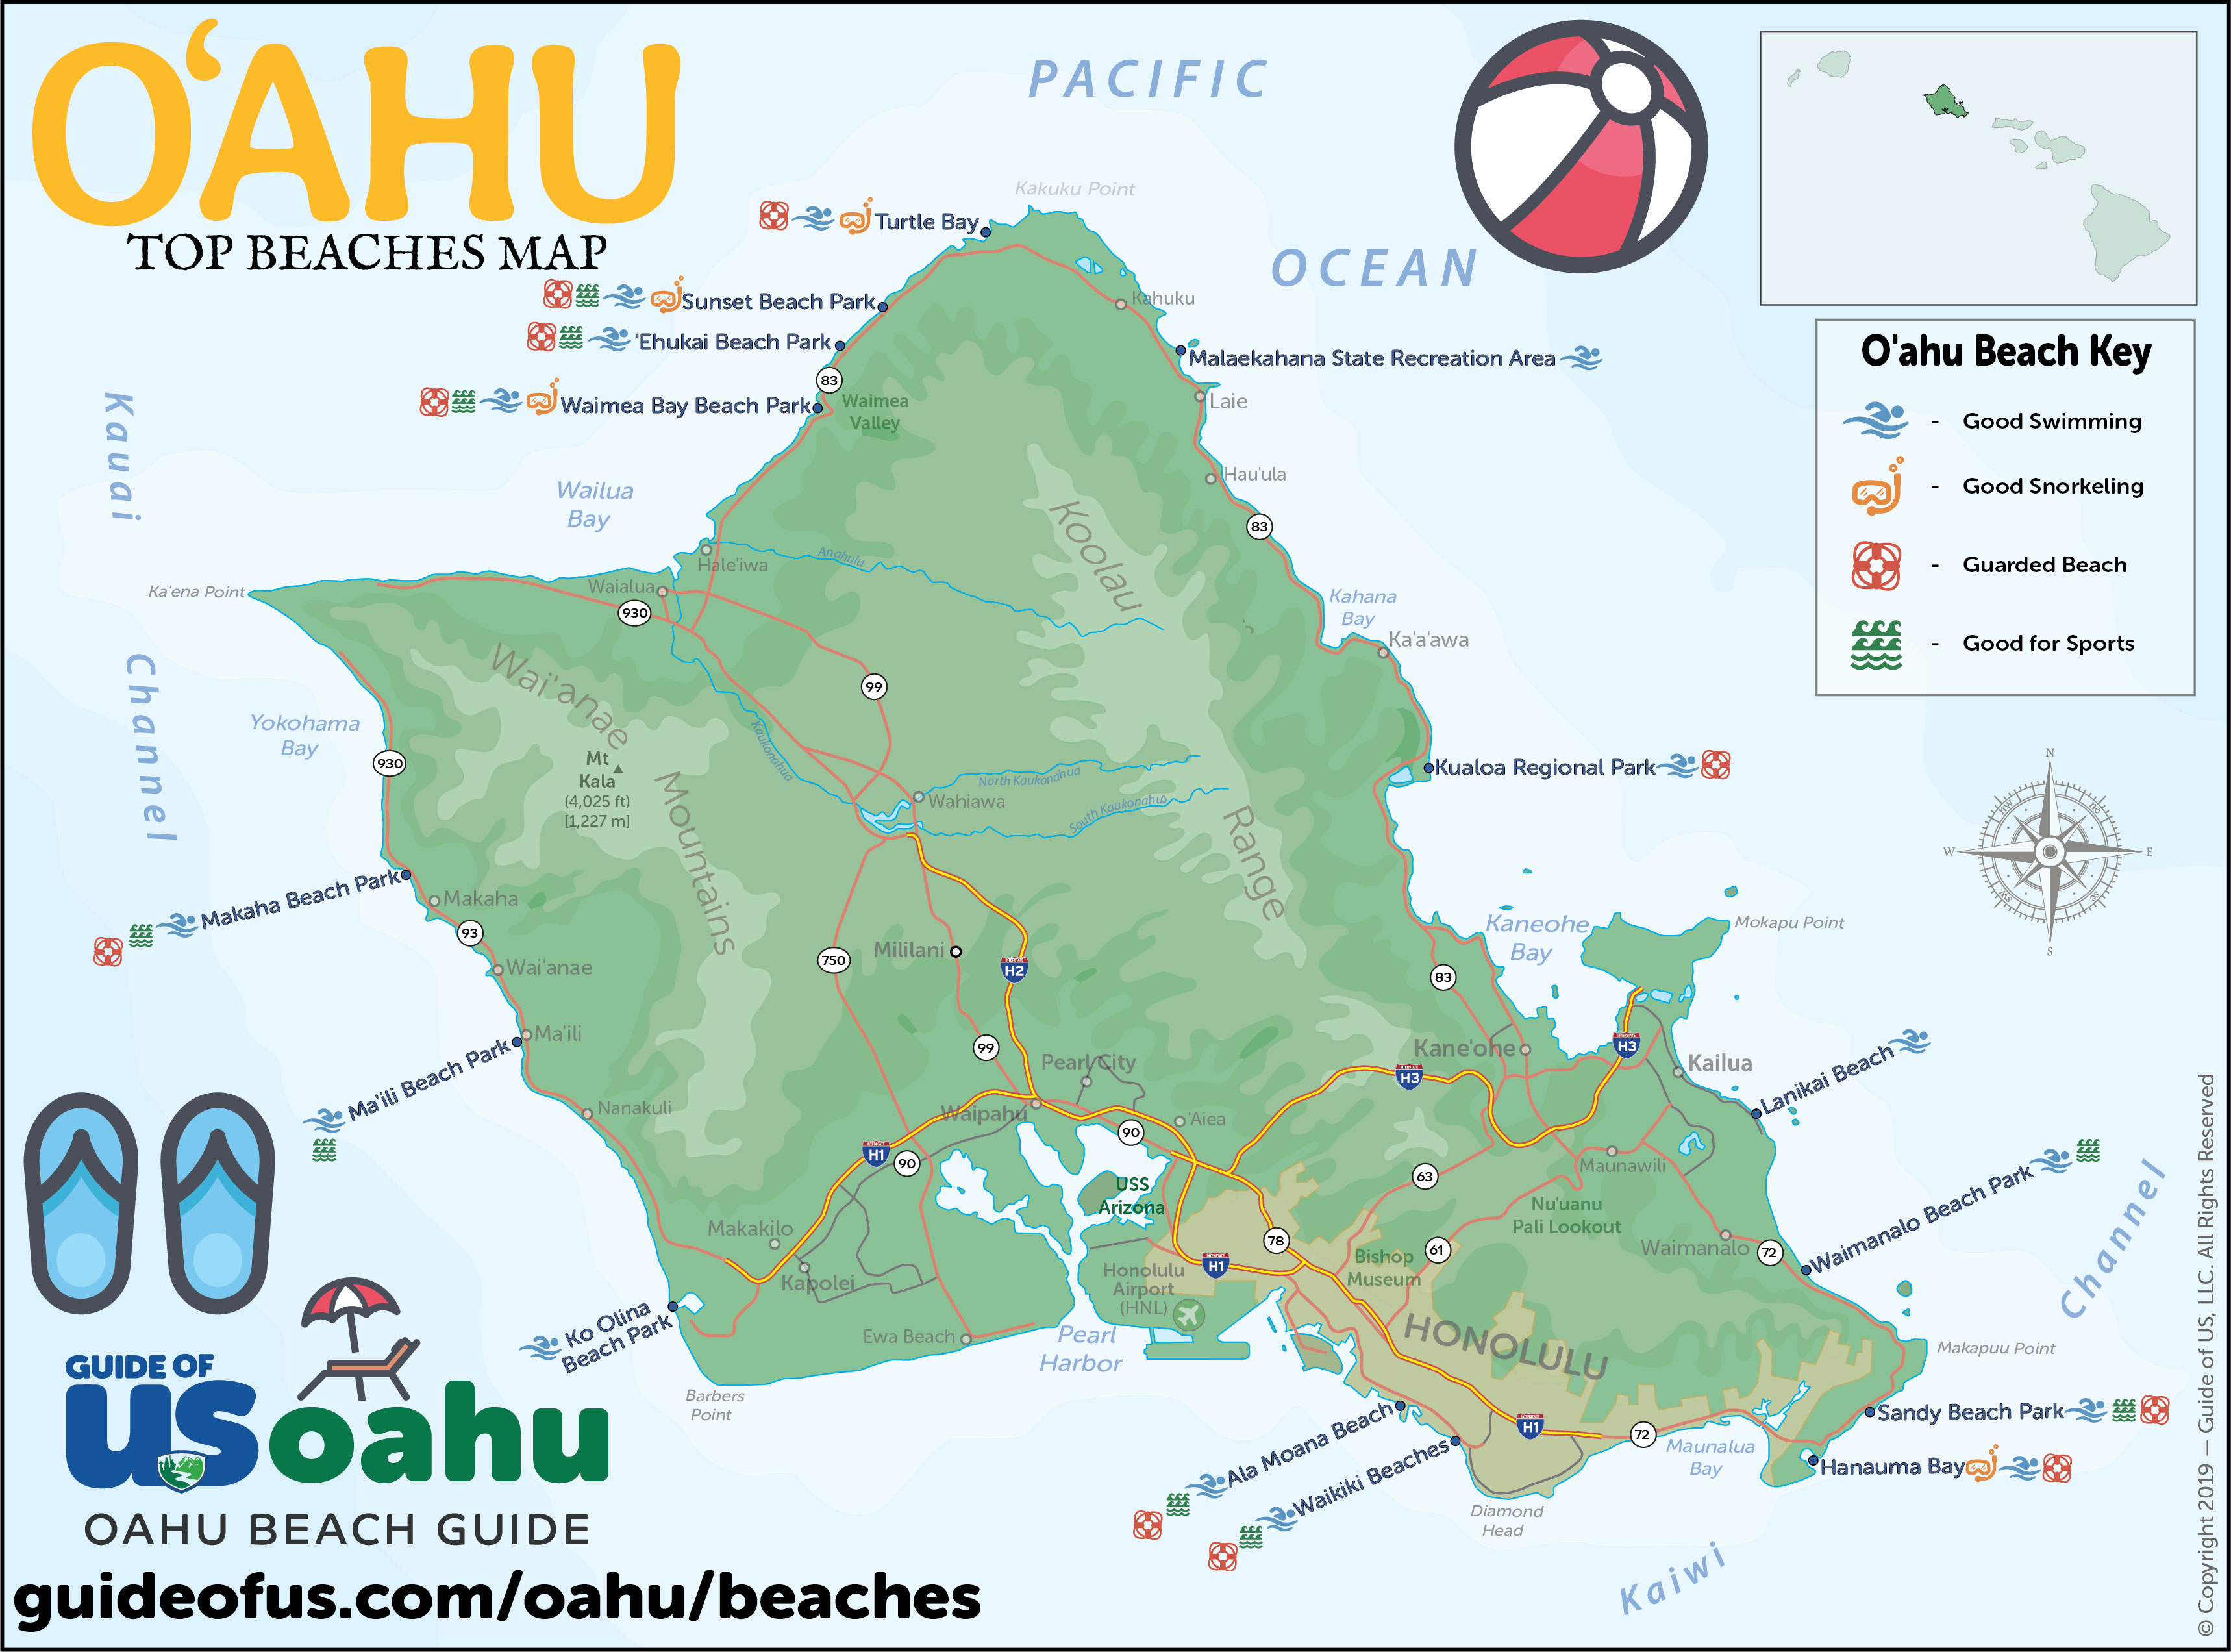 Oahu Beach Guide 10 Best Beaches On Oahu